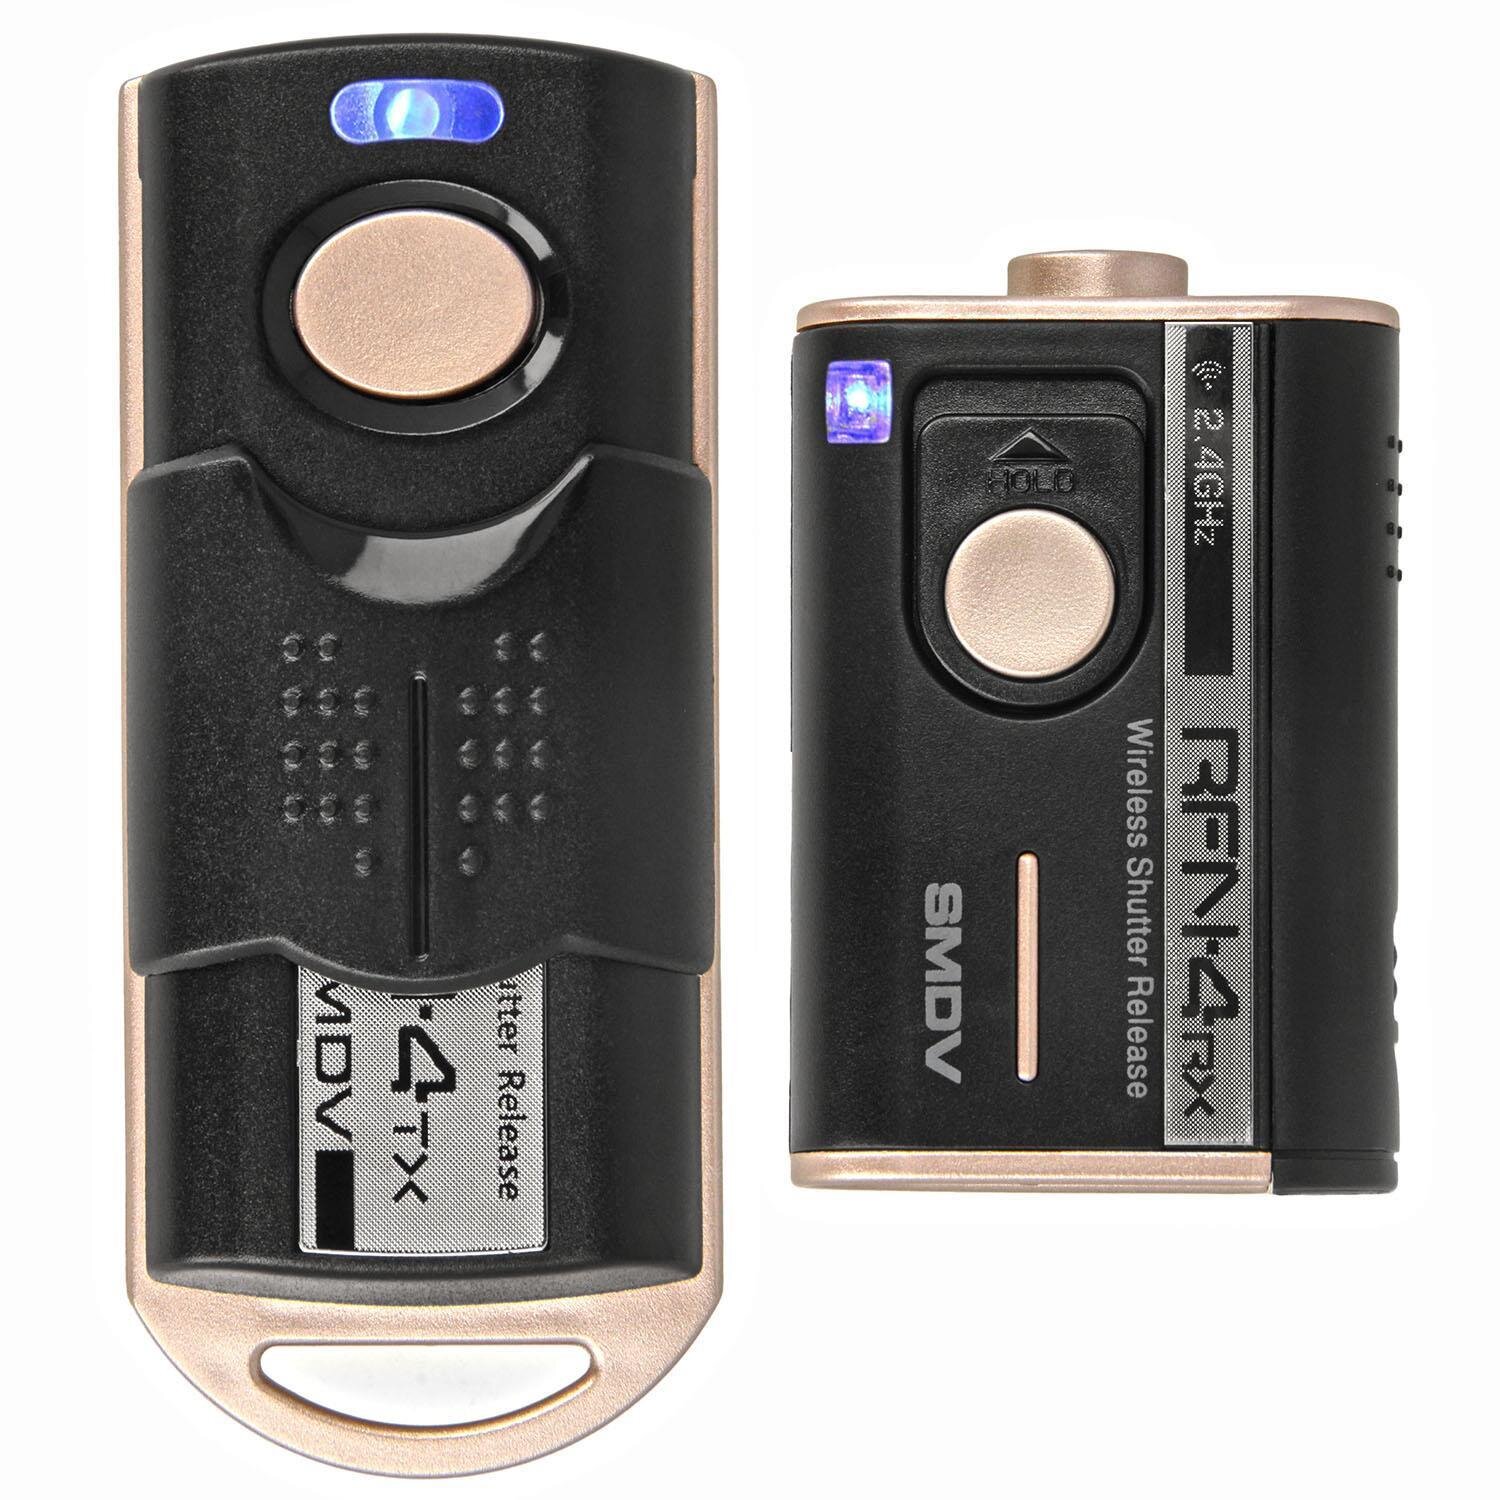 Impulsfoto SMDV RFN-4 RF-913 Kamera Fernausl&ouml;ser, Kompatibel mit Sony Kameras , 2,4Ghz, 16 Kan&auml;le, Reichweite bis 100m - Ersatz f&uuml;r Sony RM-VPR1